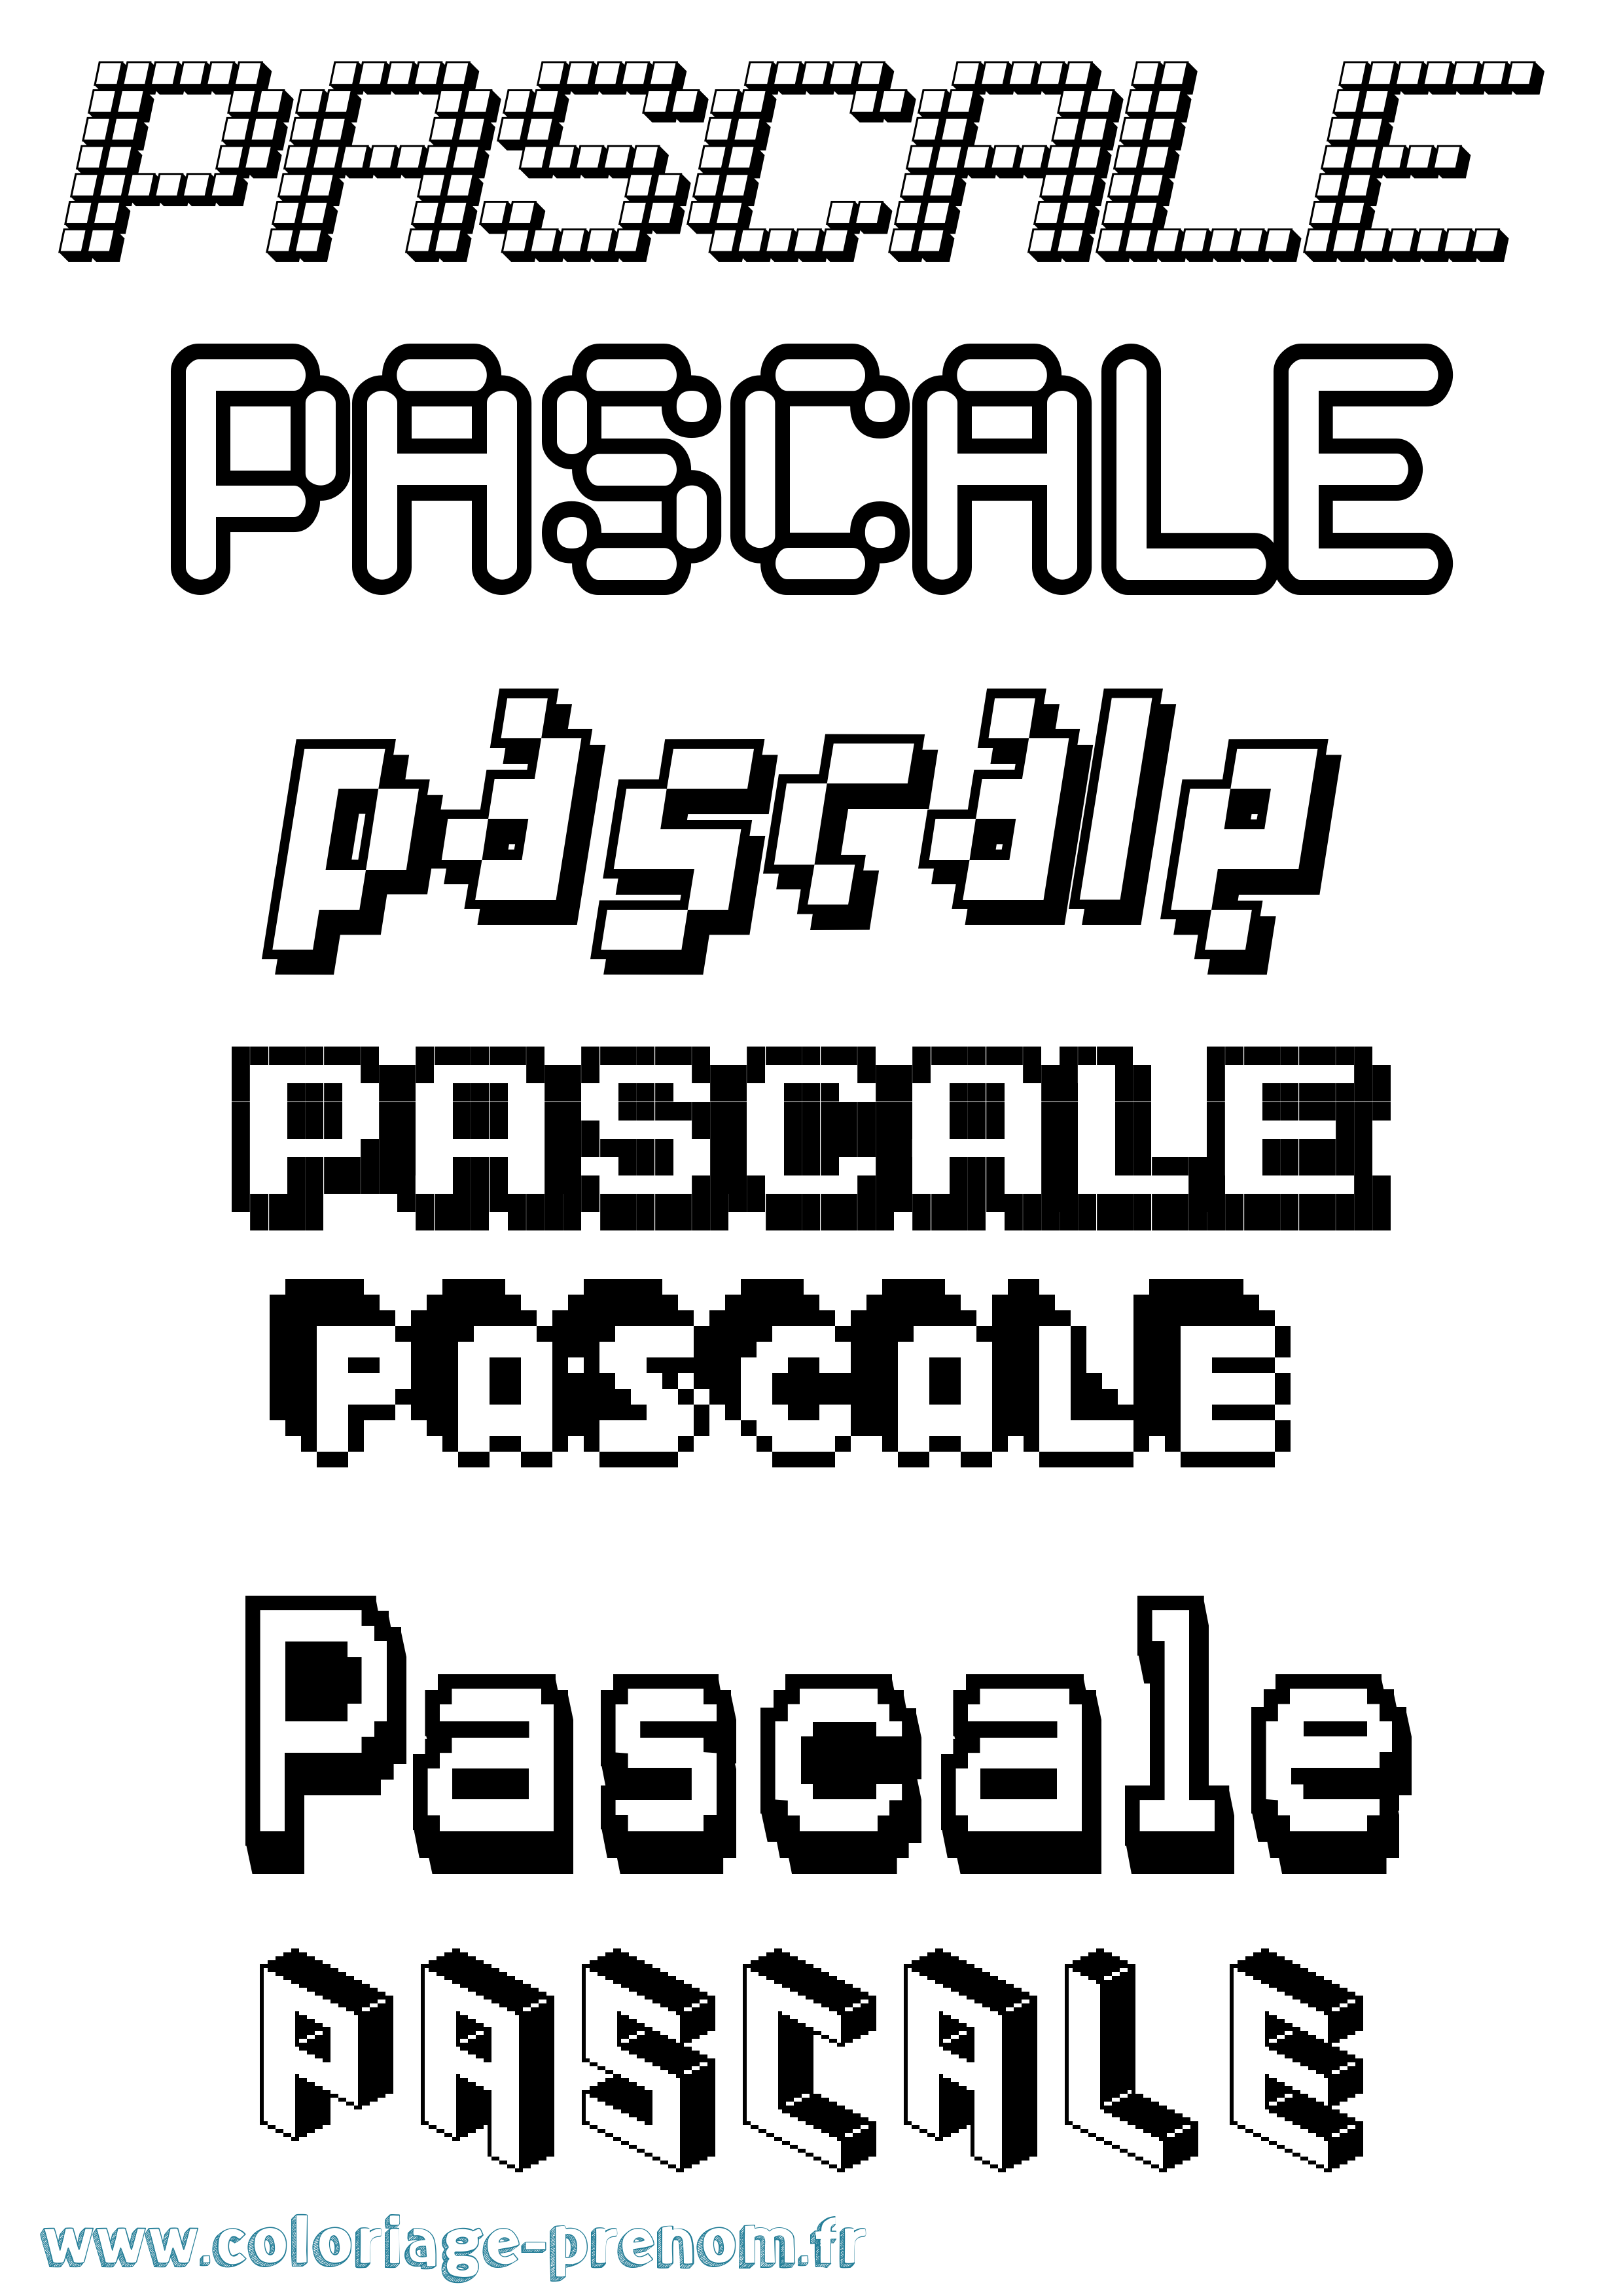 Coloriage prénom Pascale Pixel